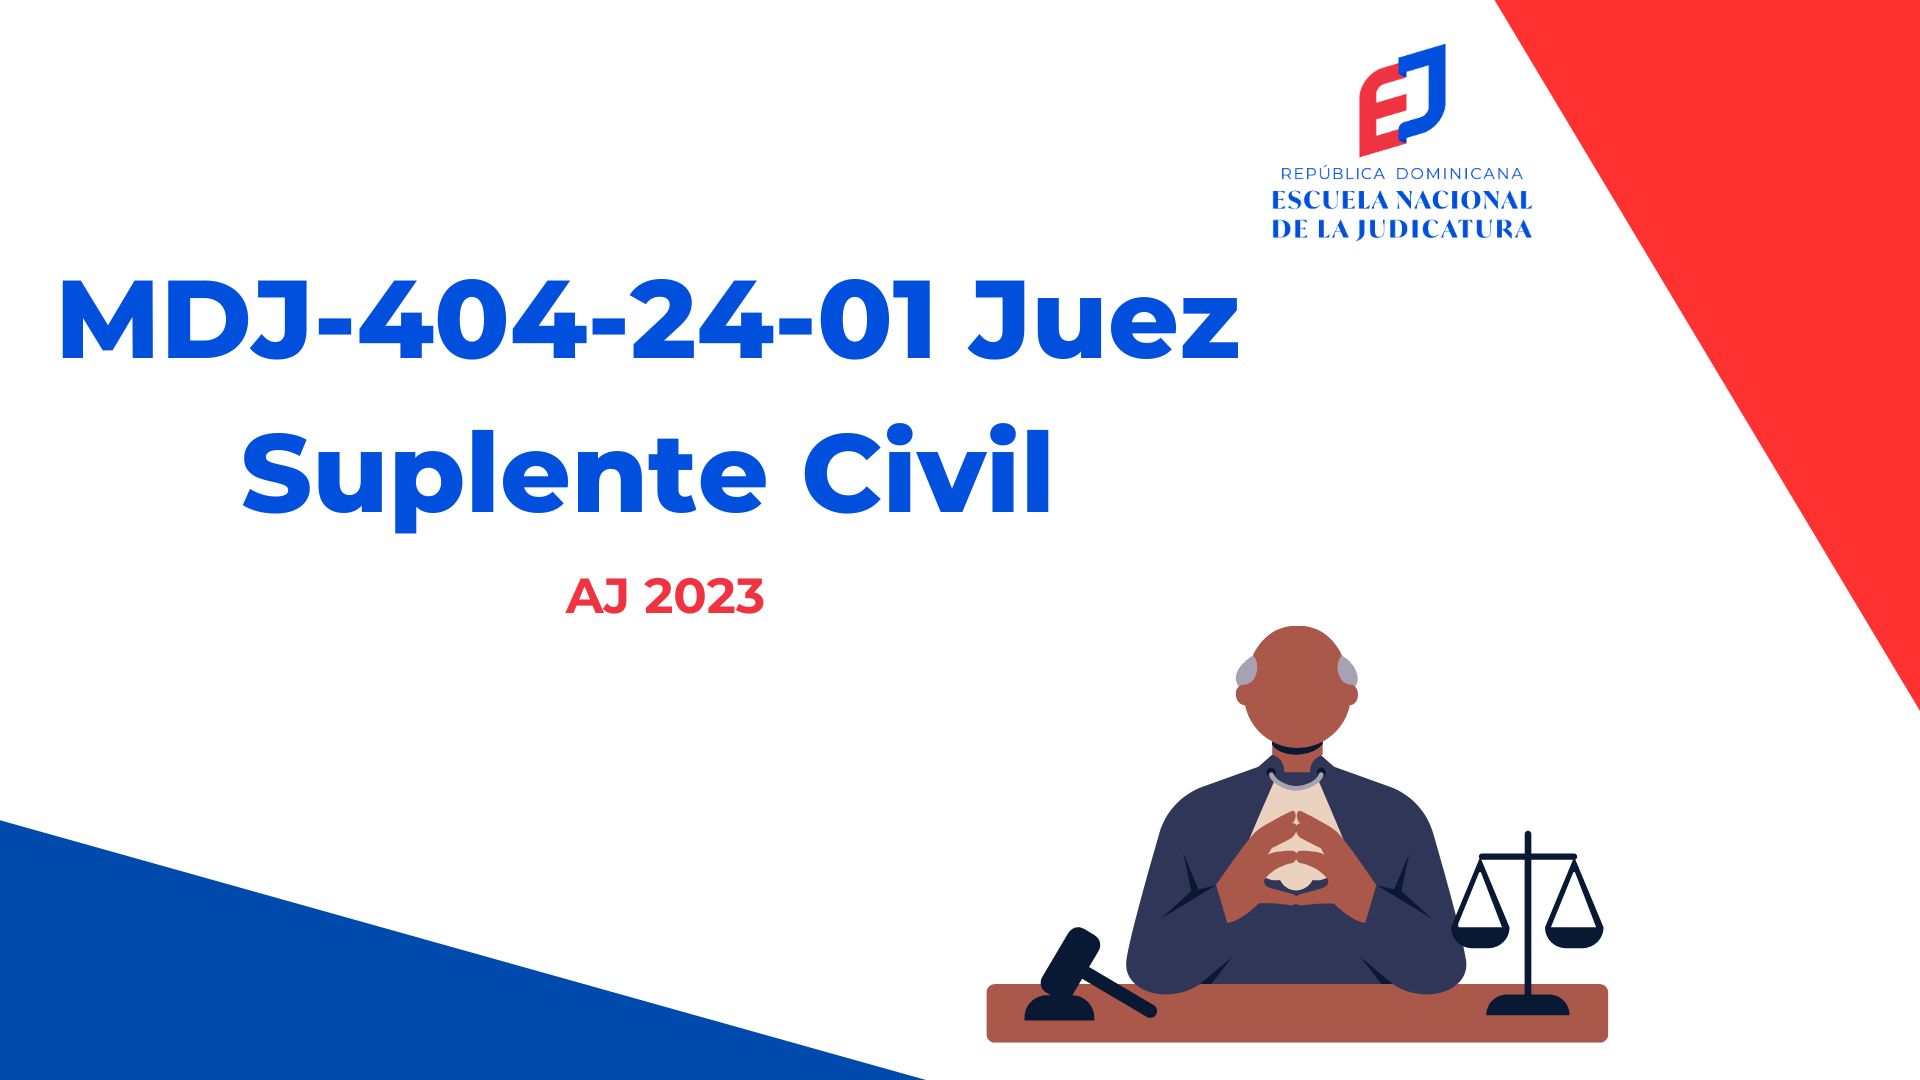 MDJ-404-24-01 Juez Suplente Civil (AJ 2023)